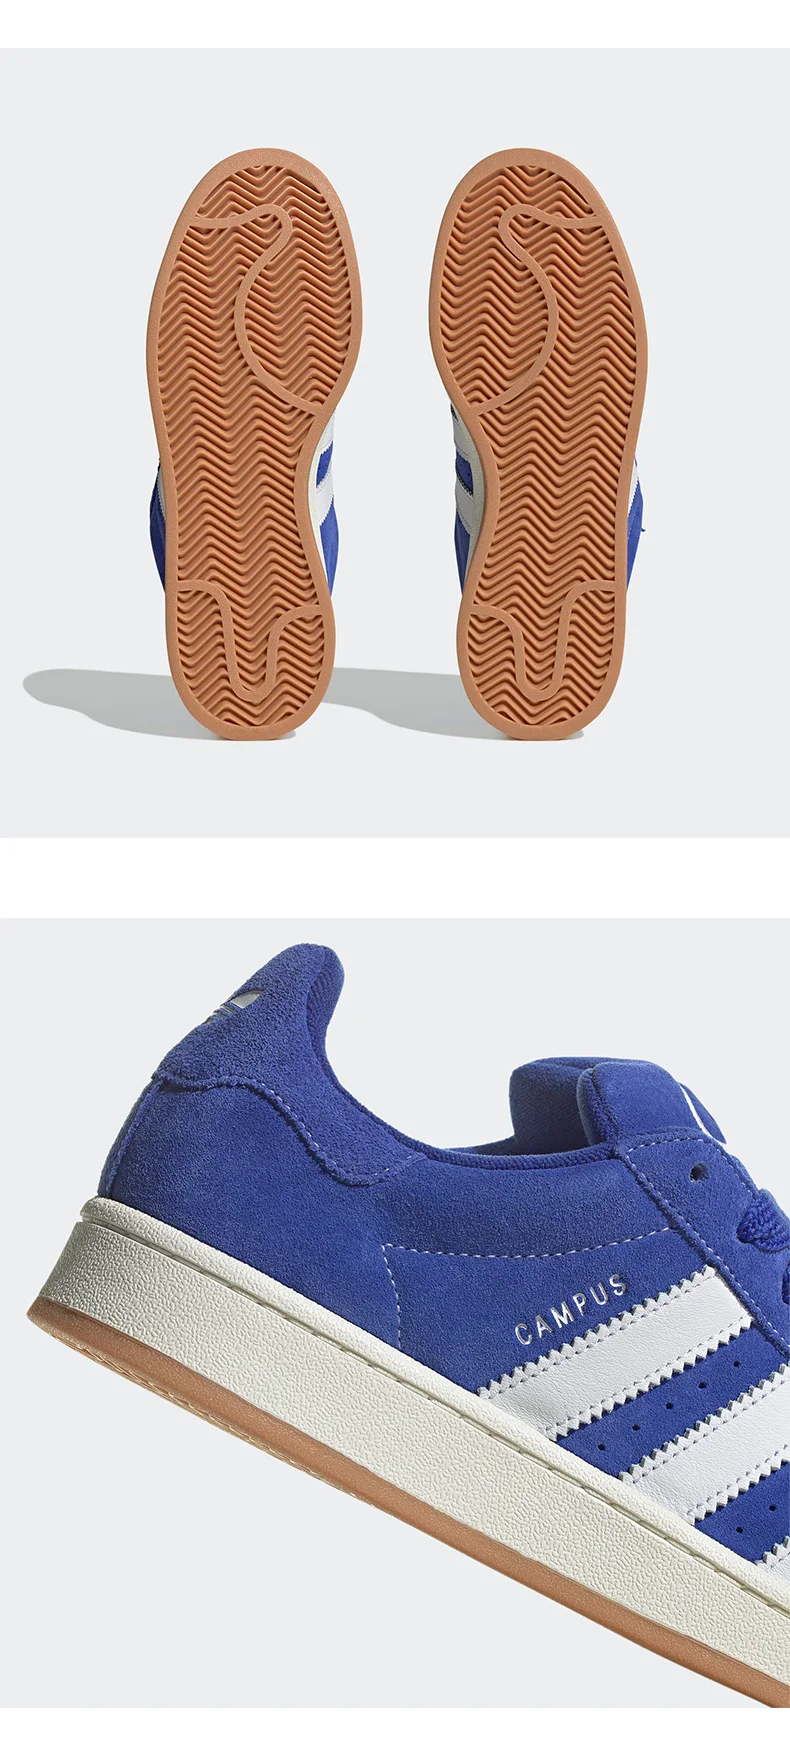 Adidas-Zapatillas deportivas para hombre y mujer, zapatos de suela baja, informales, originales, modelo Clover Campus 00s